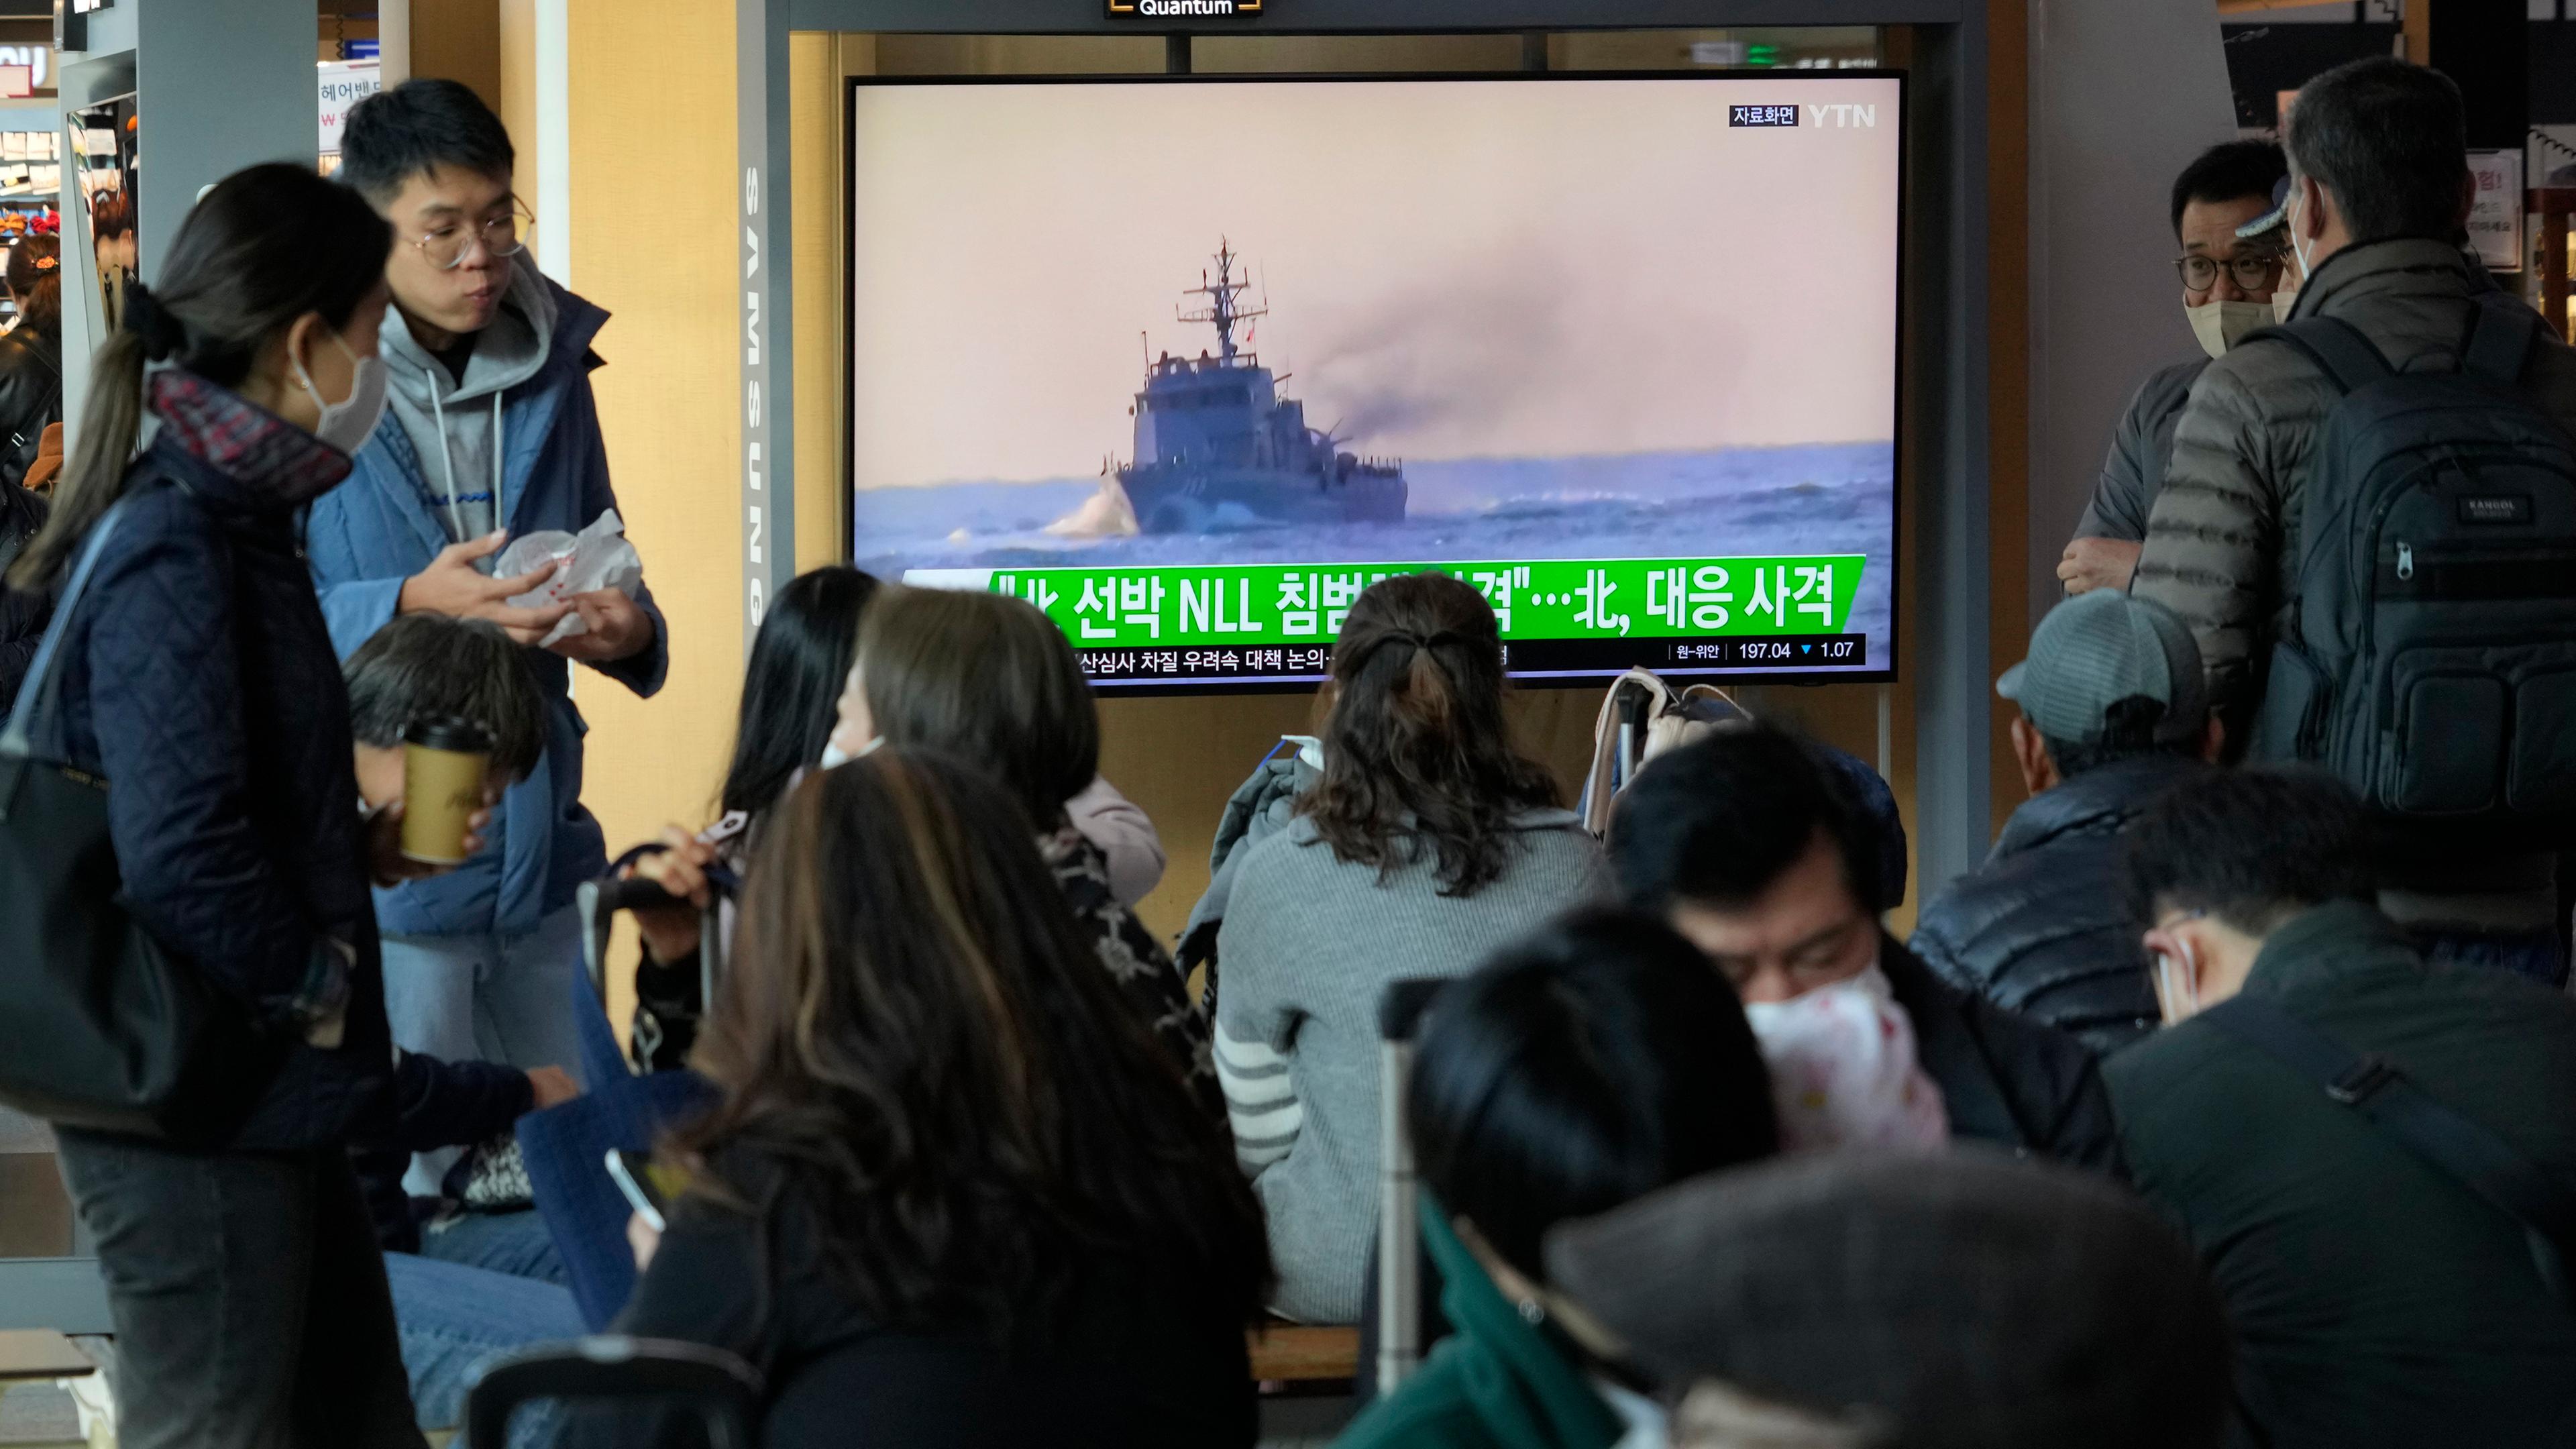 Ein Fernsehsender zeigt Bilder eines Militärschiffes.